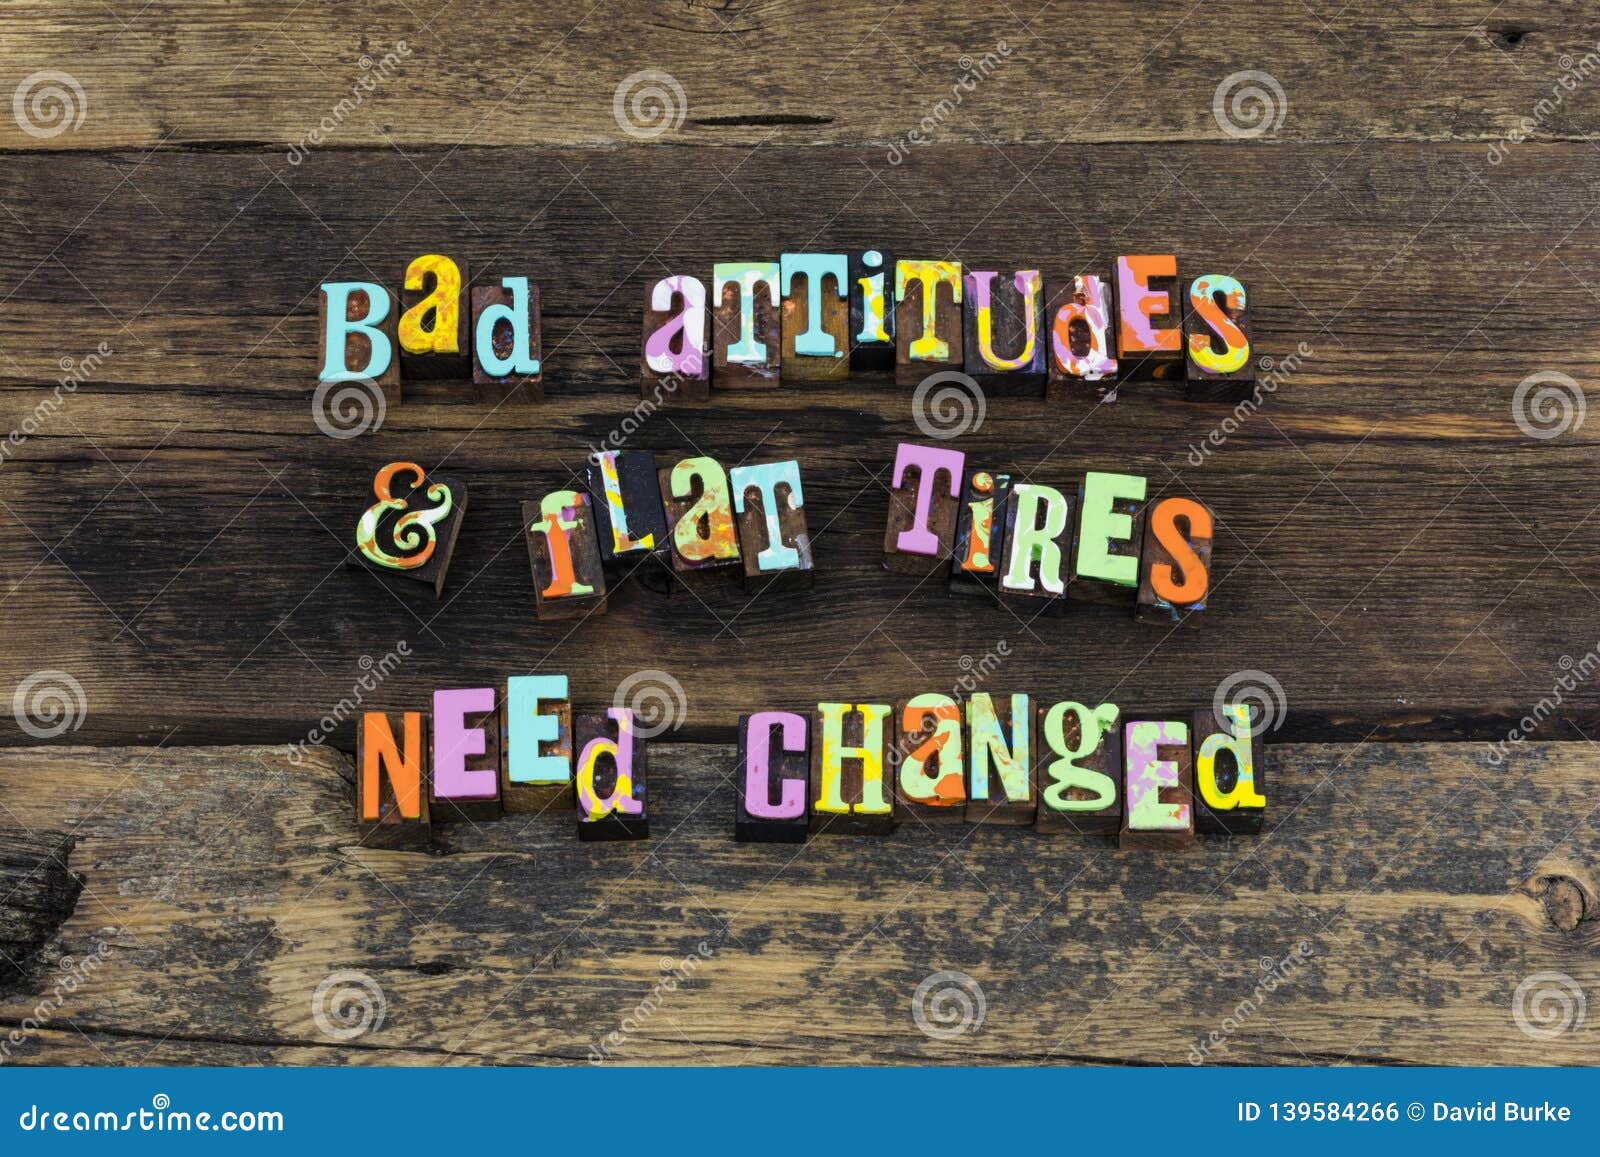 positive attitude believe positive optimism success bad attitudes